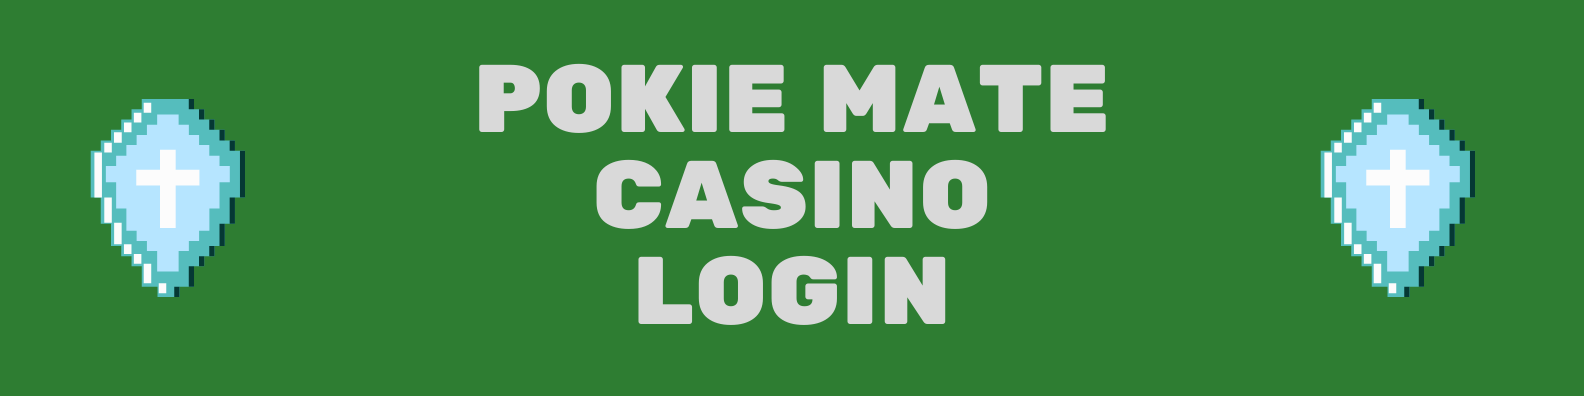 Pokie Mate Casino Login